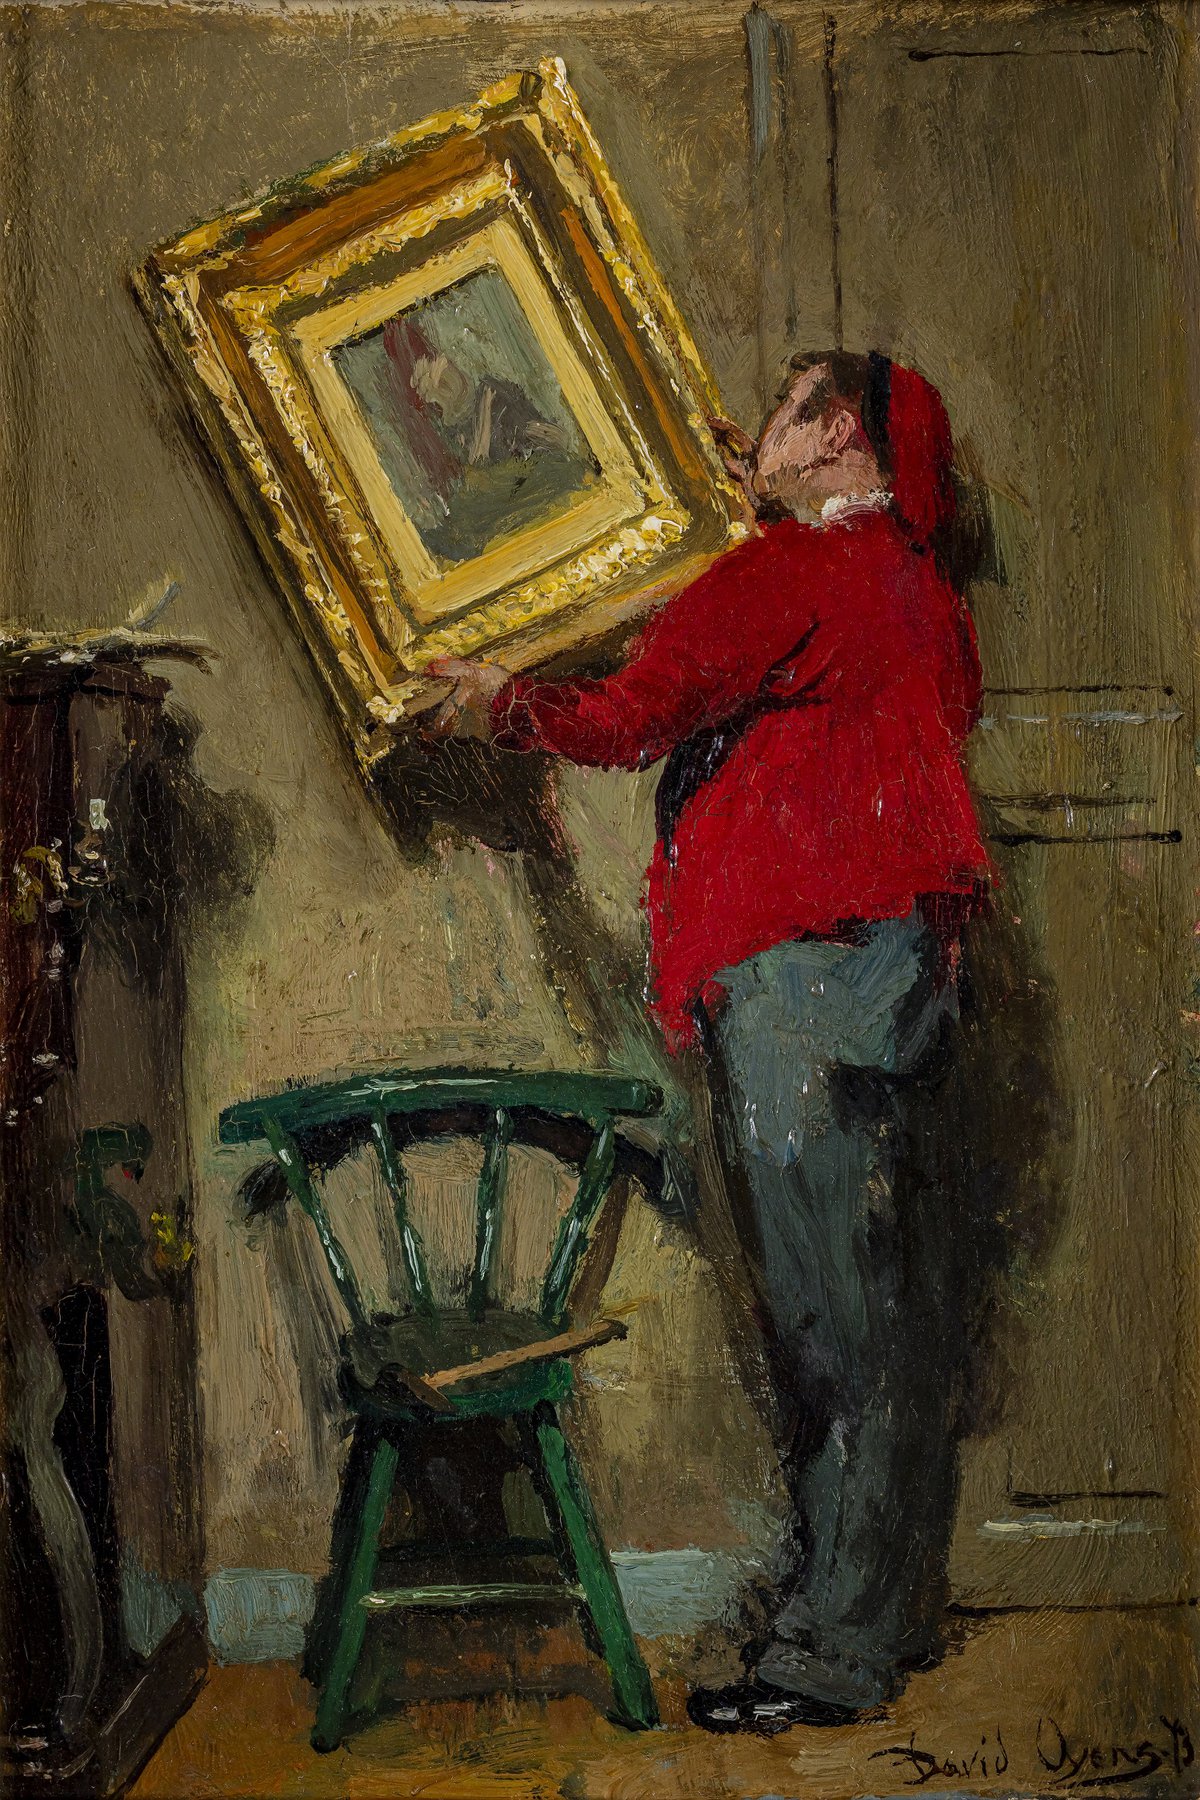 David Oyens, Het ophangen van het schilderij, 1873